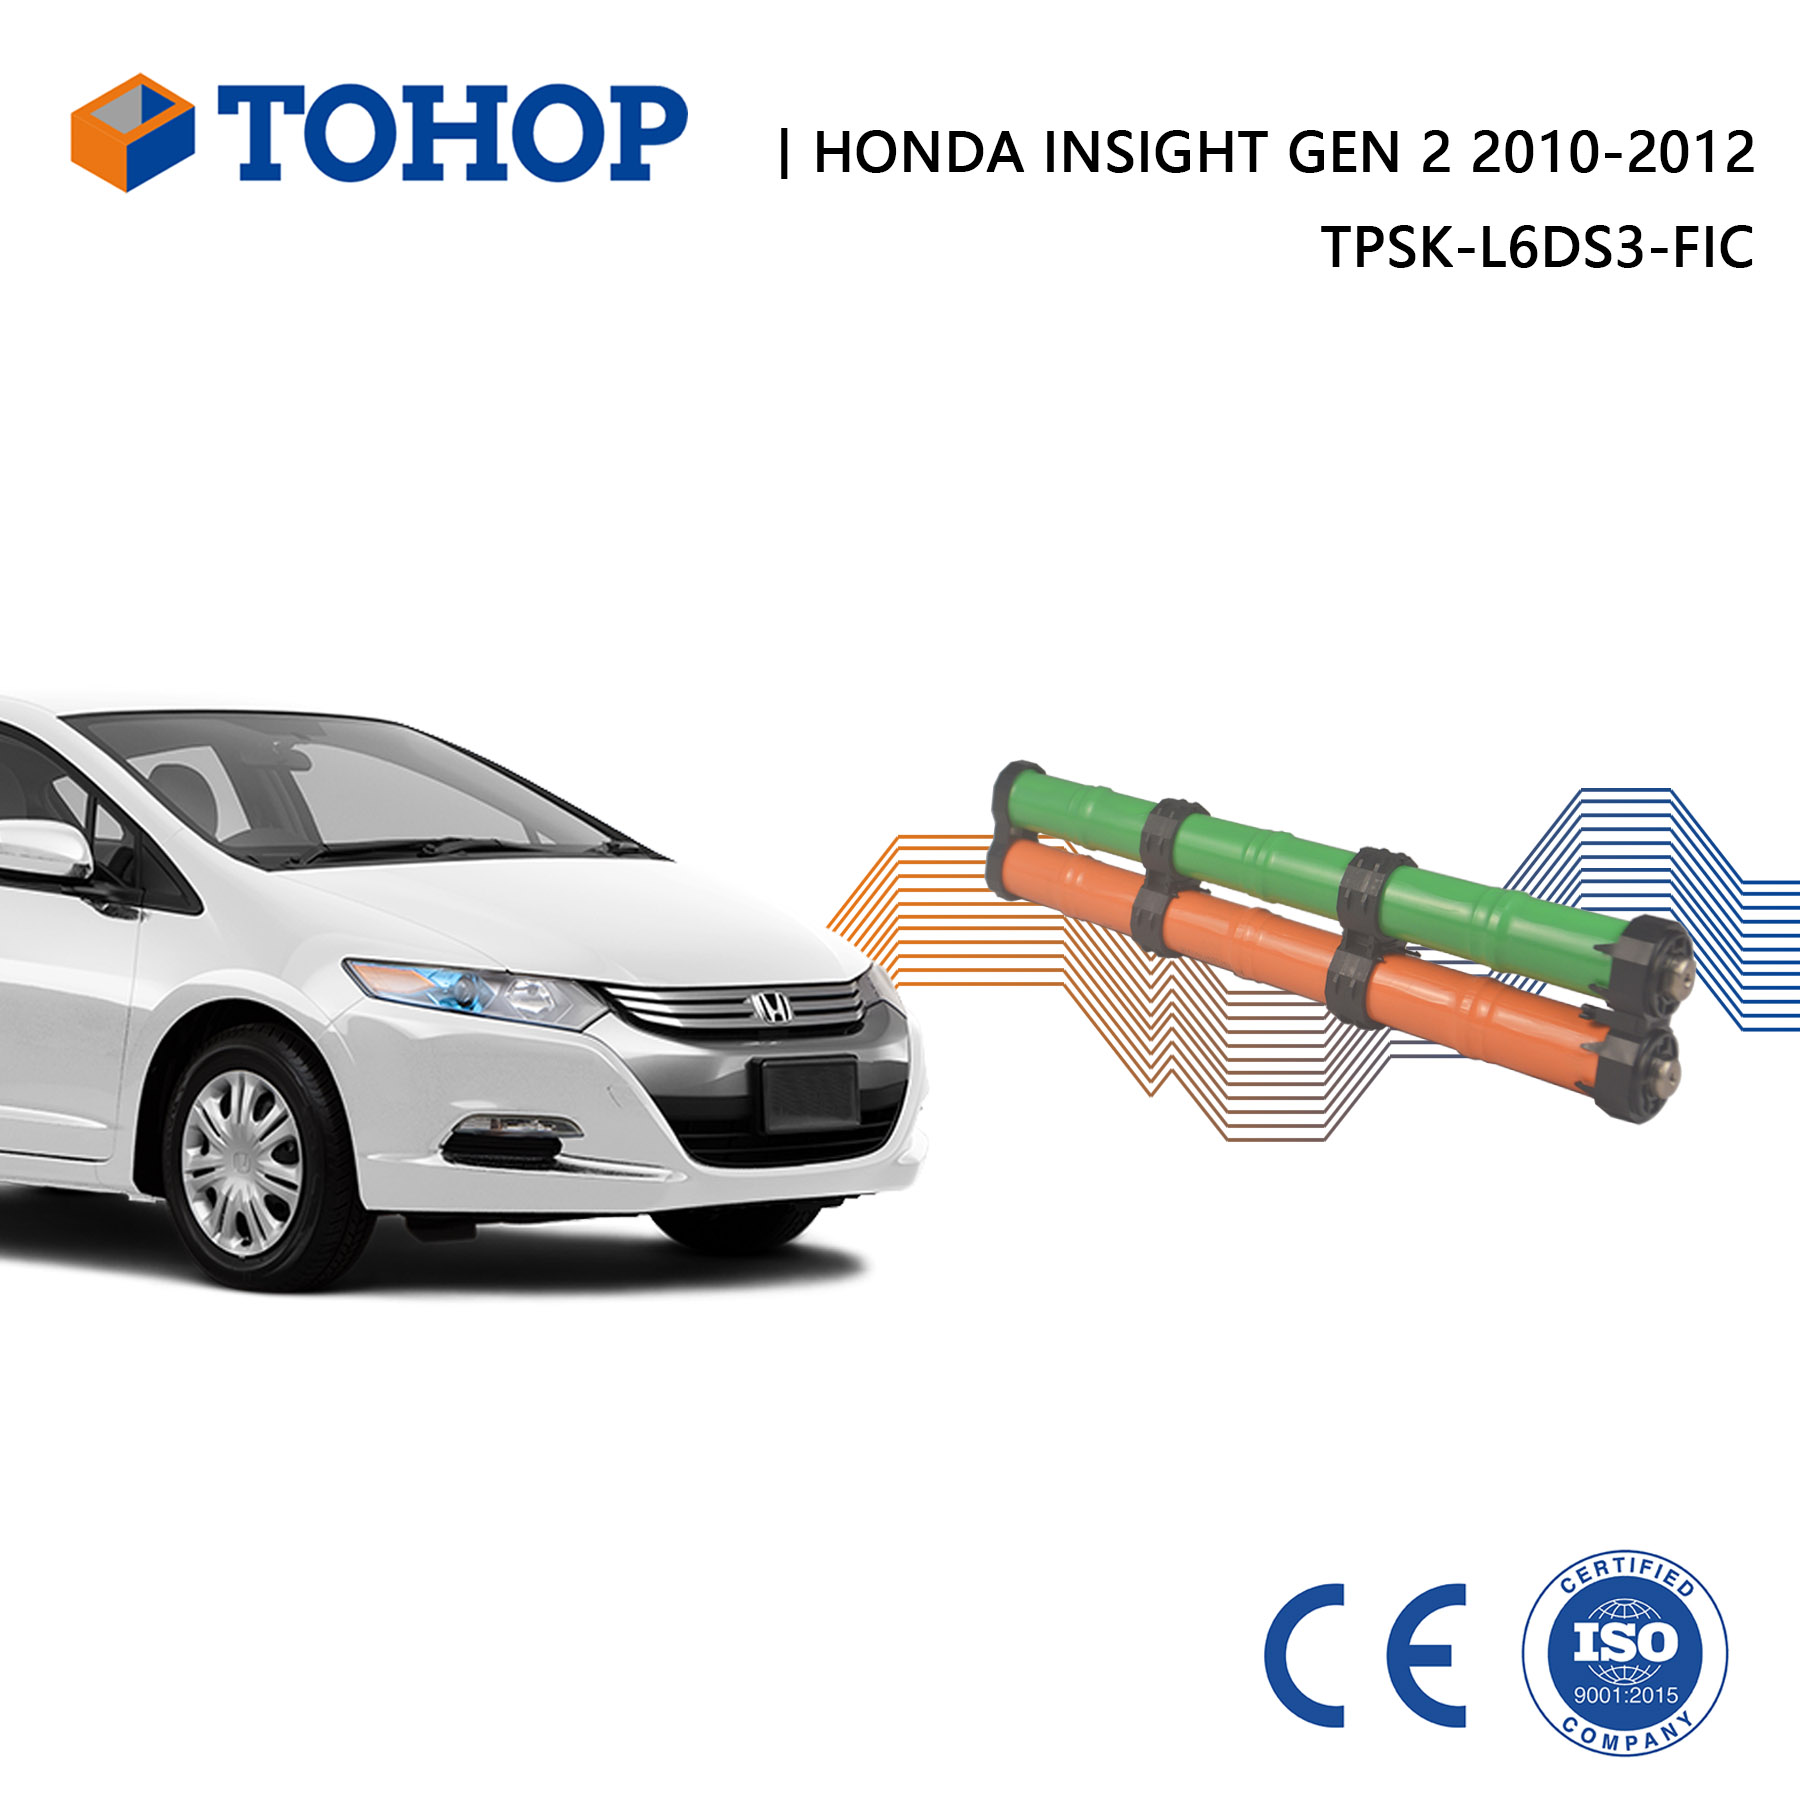 Nuovissima batteria ibrida di ricambio Gen.2 Insight 2011 per Honda